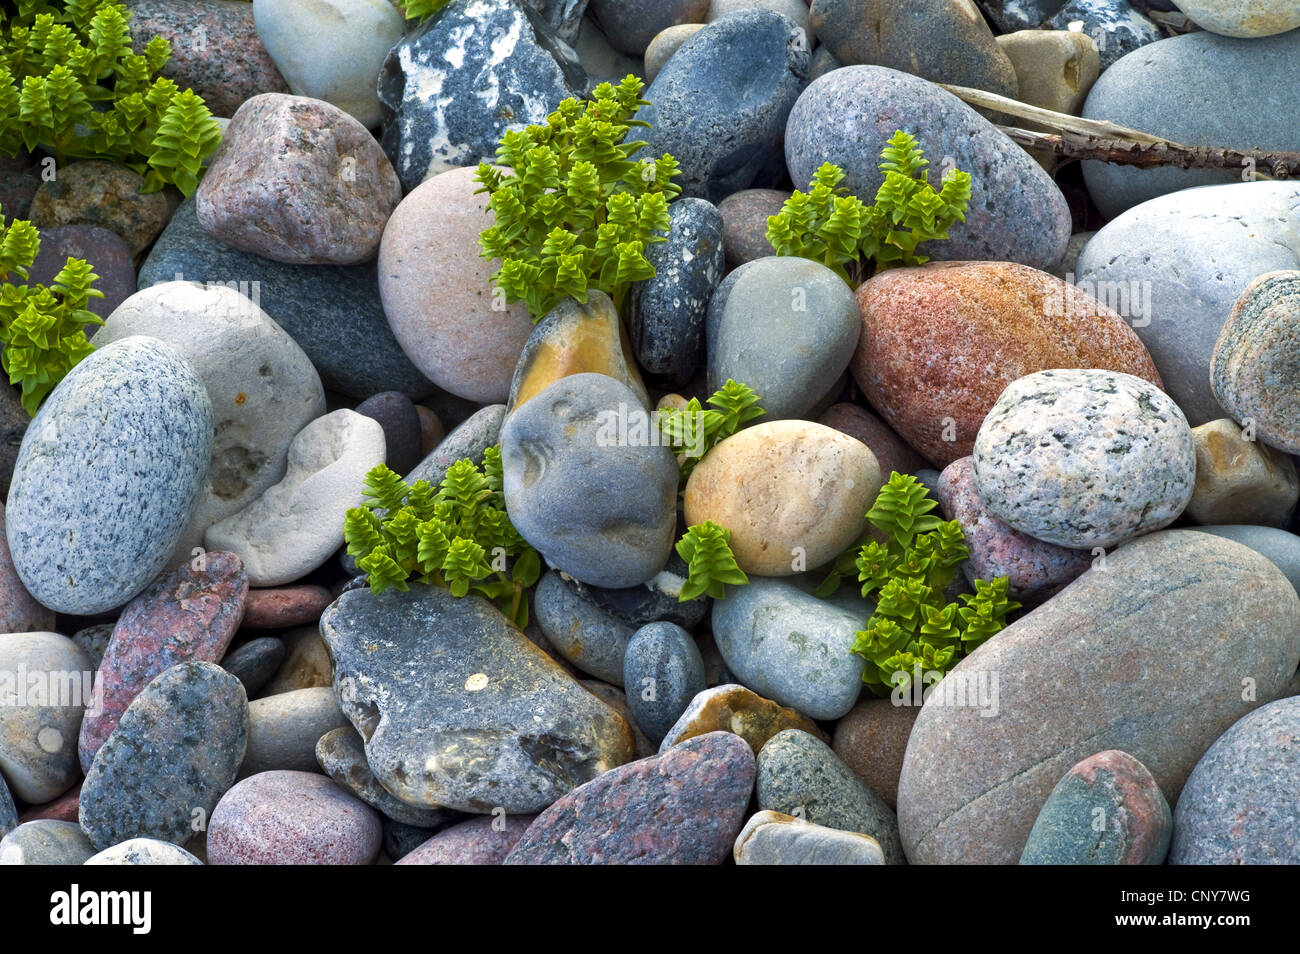 Sabline mer mer, le mouron des oiseaux (Honckenya peploides), entre des pierres sur la côte de la mer Baltique, Allemagne Banque D'Images